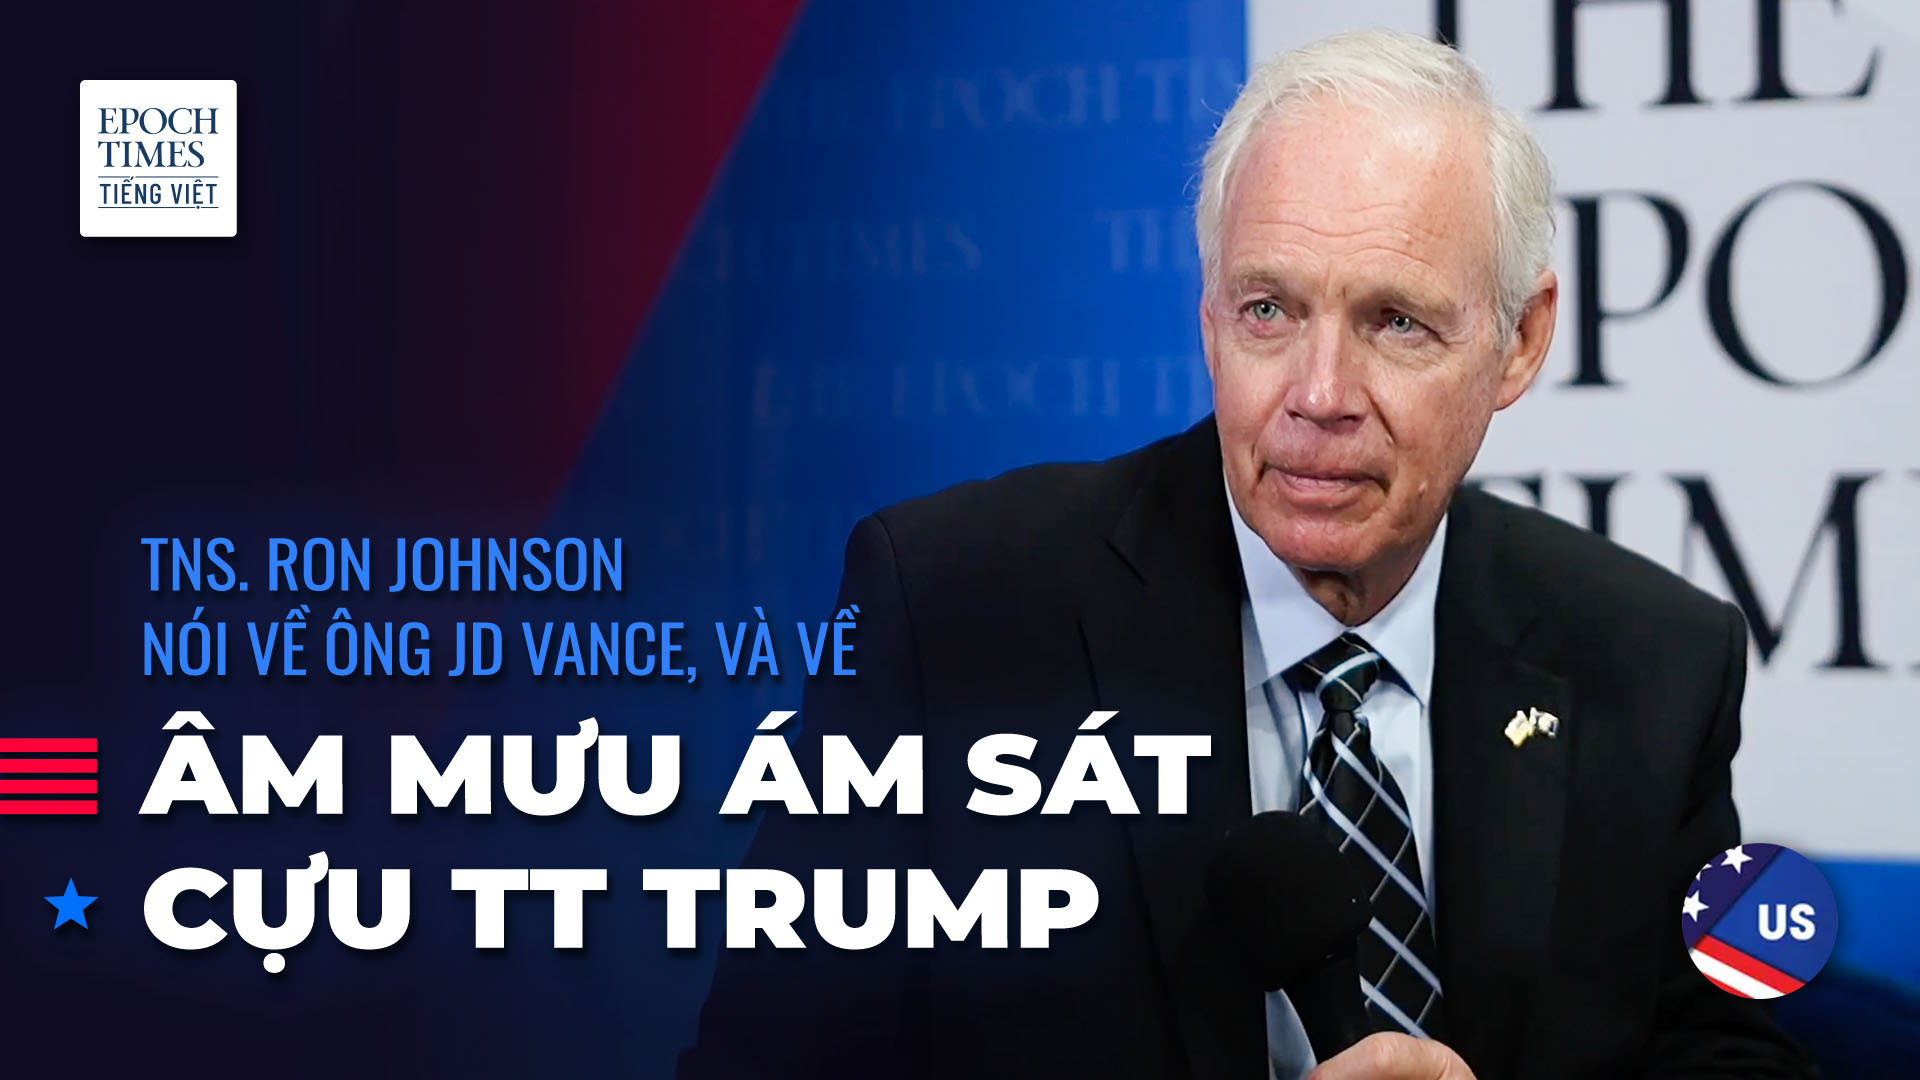 Thượng nghị sỹ Ron Johnson nói về ông JD Vance, và về âm mưu ám sát cựu TT Trump